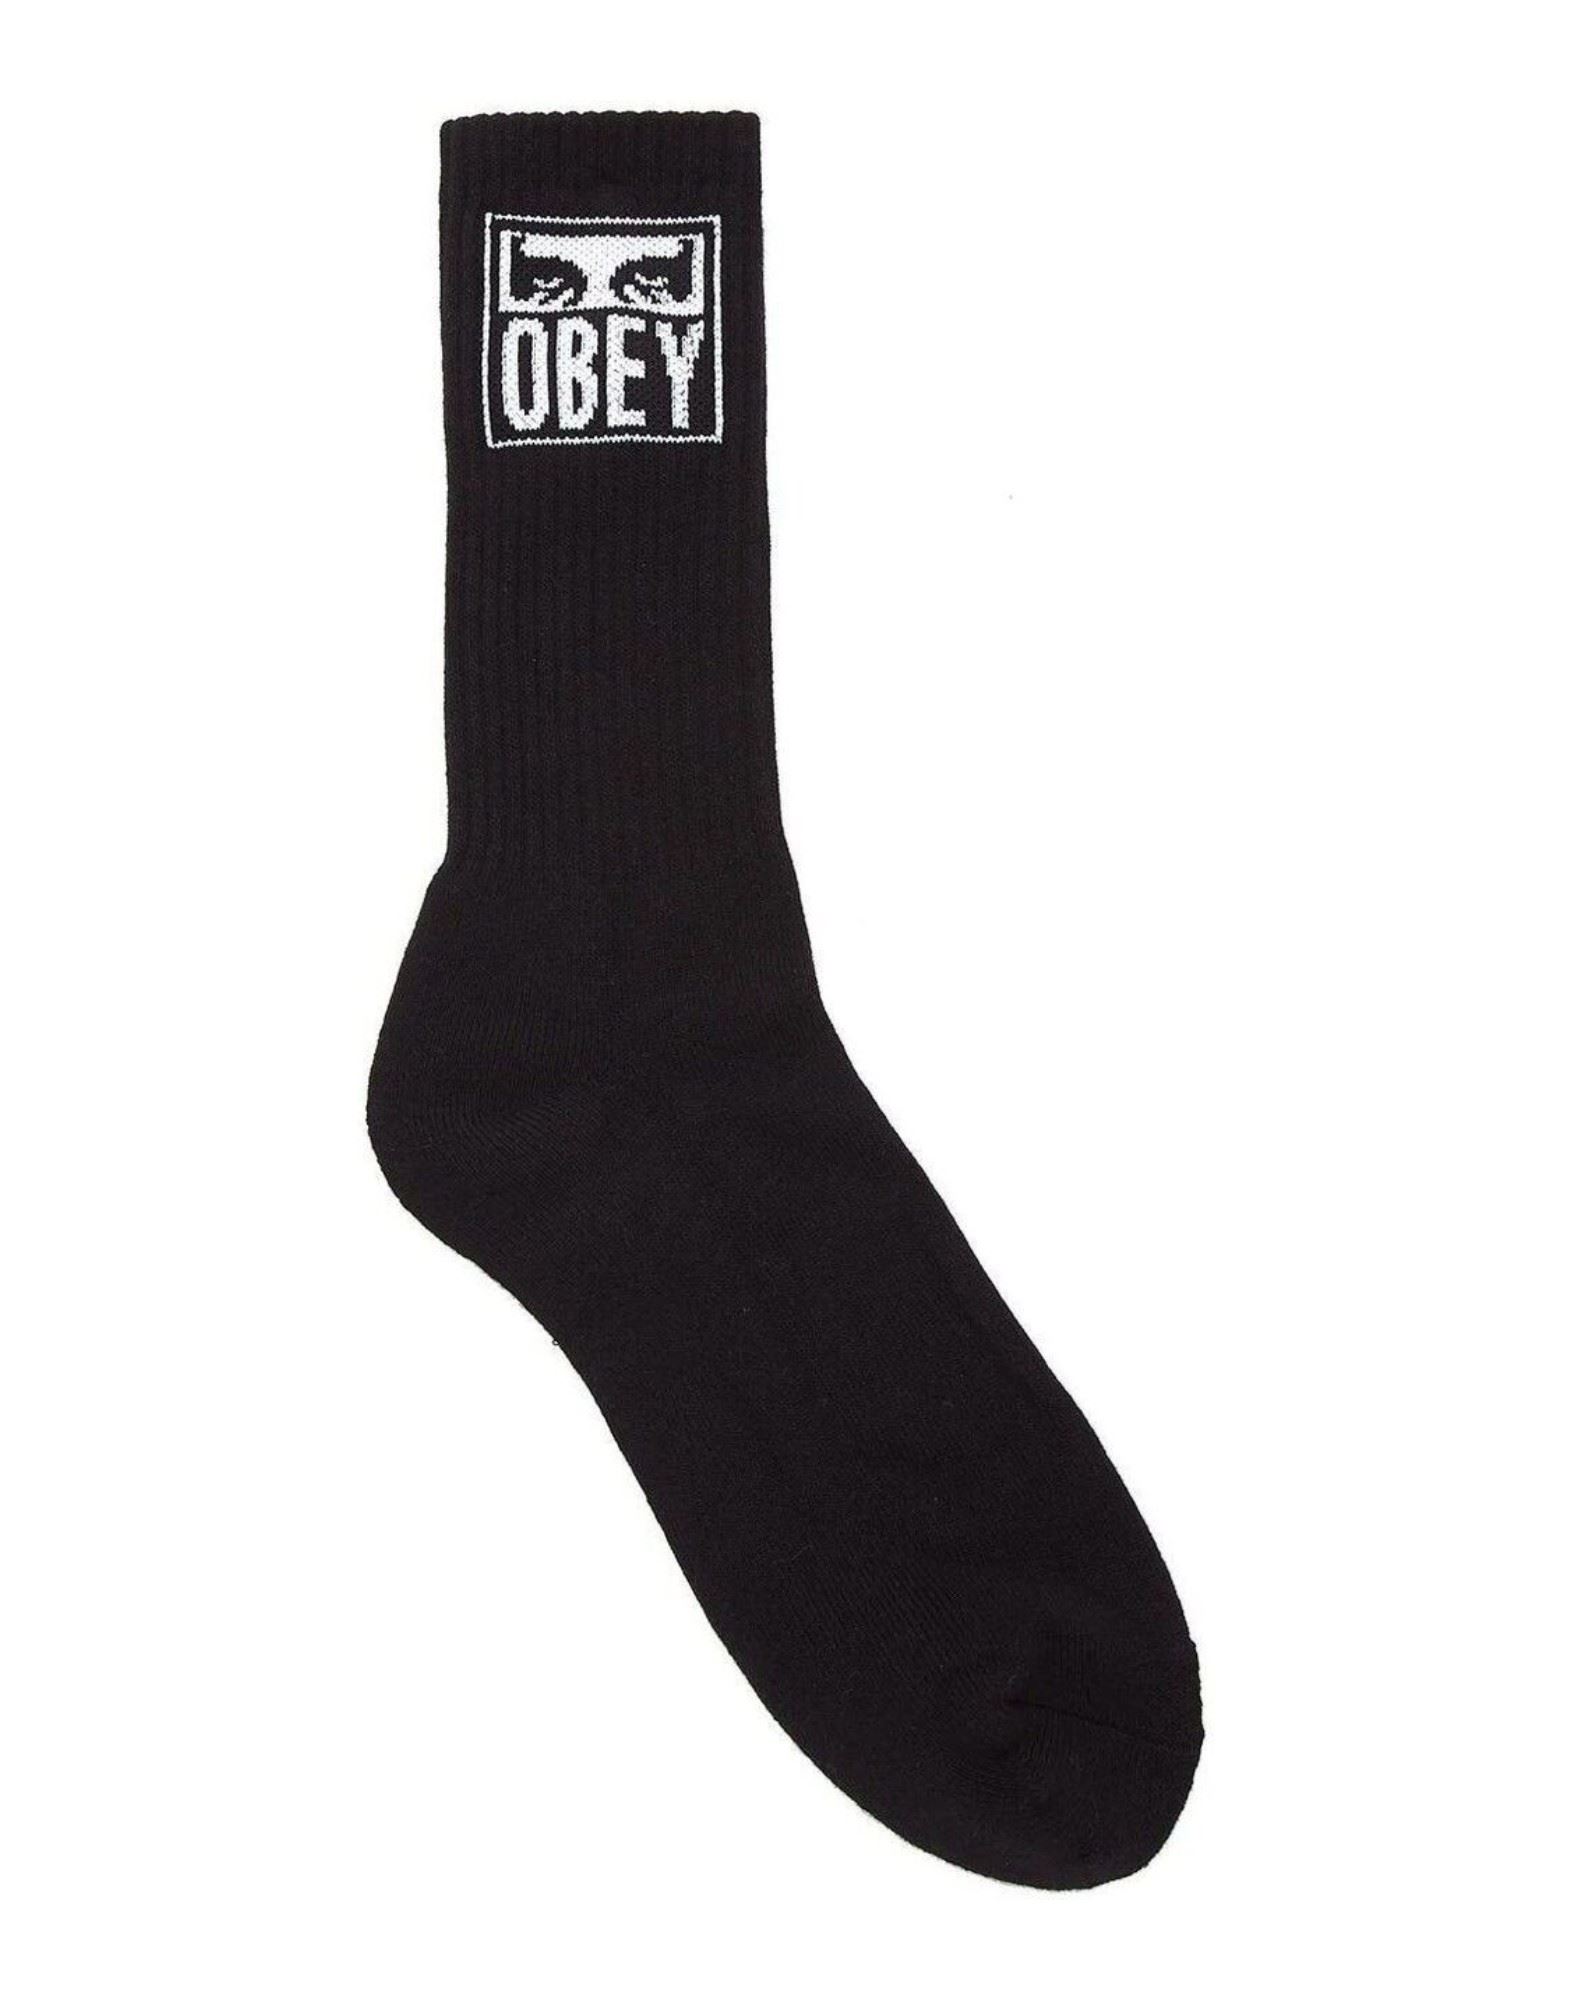 OBEY Socken & Strumpfhosen Herren Schwarz von OBEY